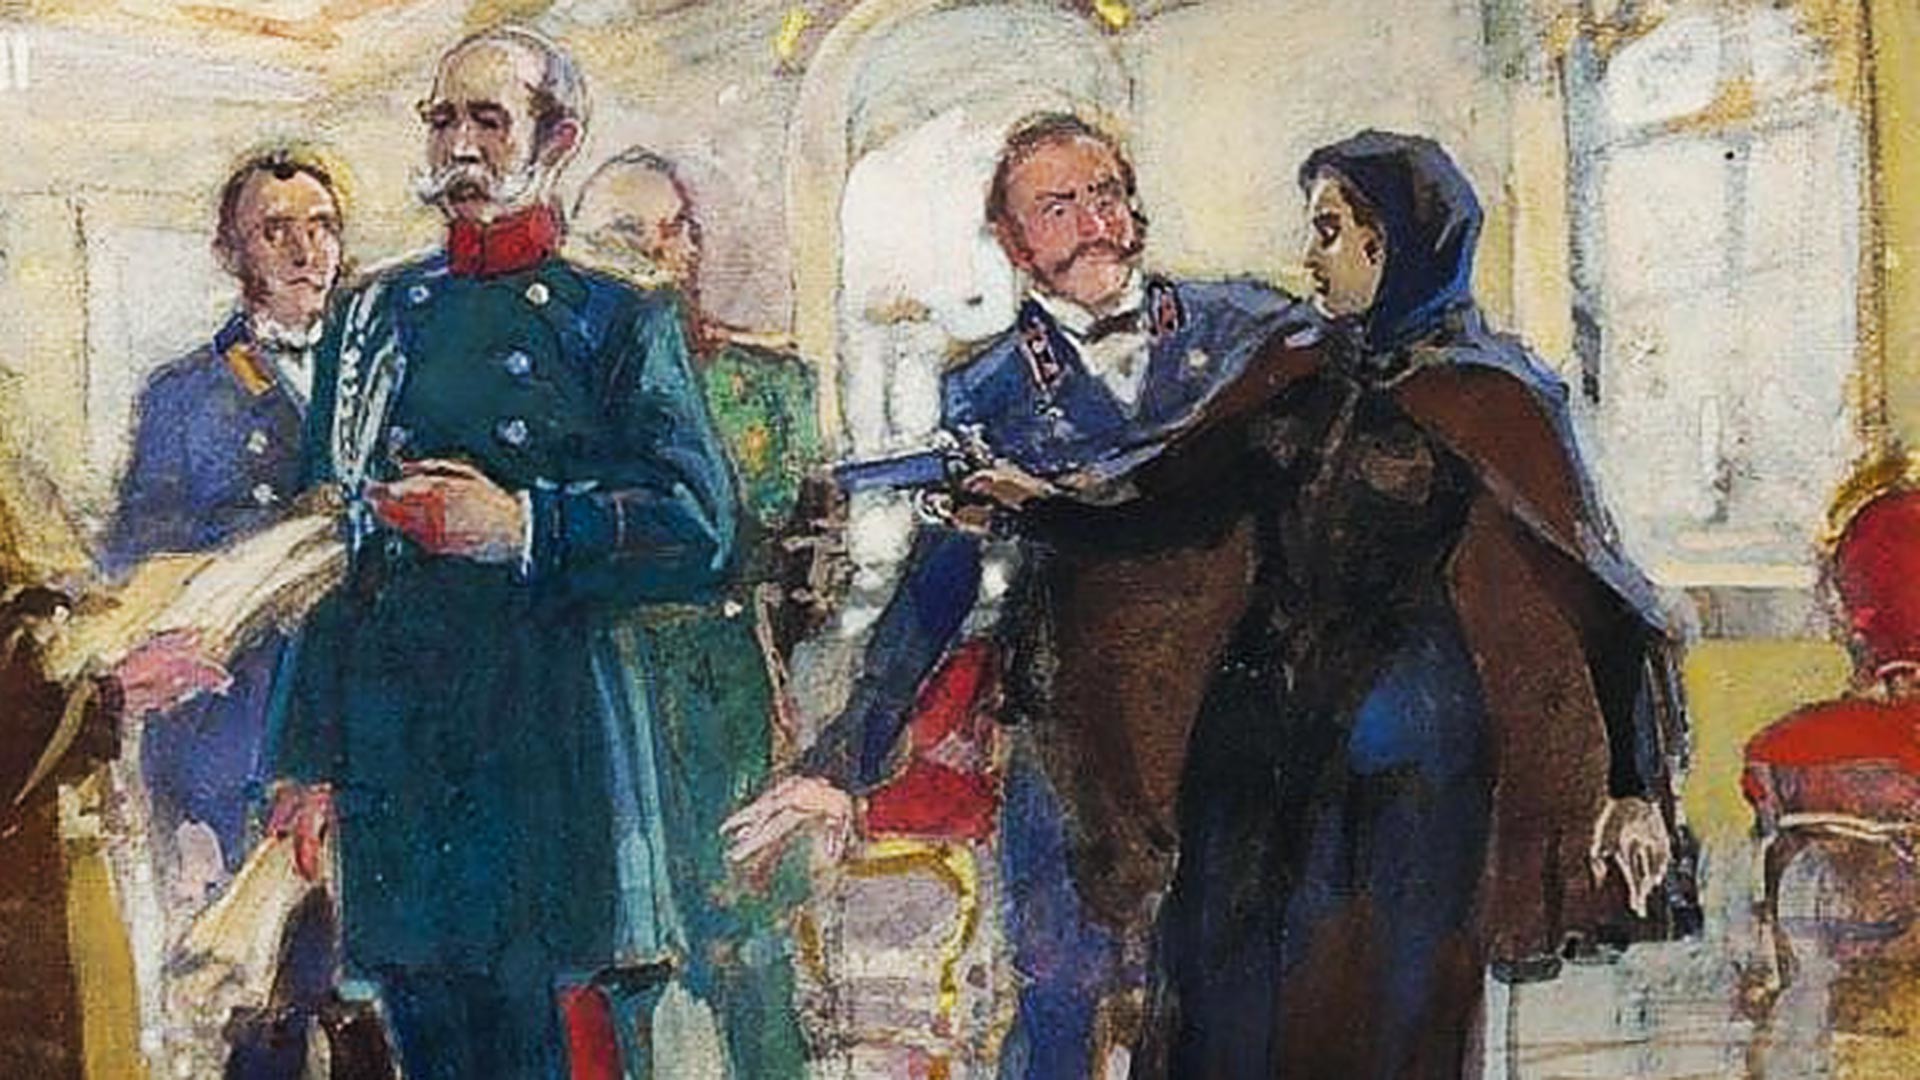 Vera Zasulich (1849—1919), penggerak revolusi Rusia yang mencoba membunuh Fyodor Trepov (1803—1889), Kepala Polisi Sankt Peterburg (1860—1878). Dia hanya berhasil melukainya. Pada persidangannya, juri membebaskannya.